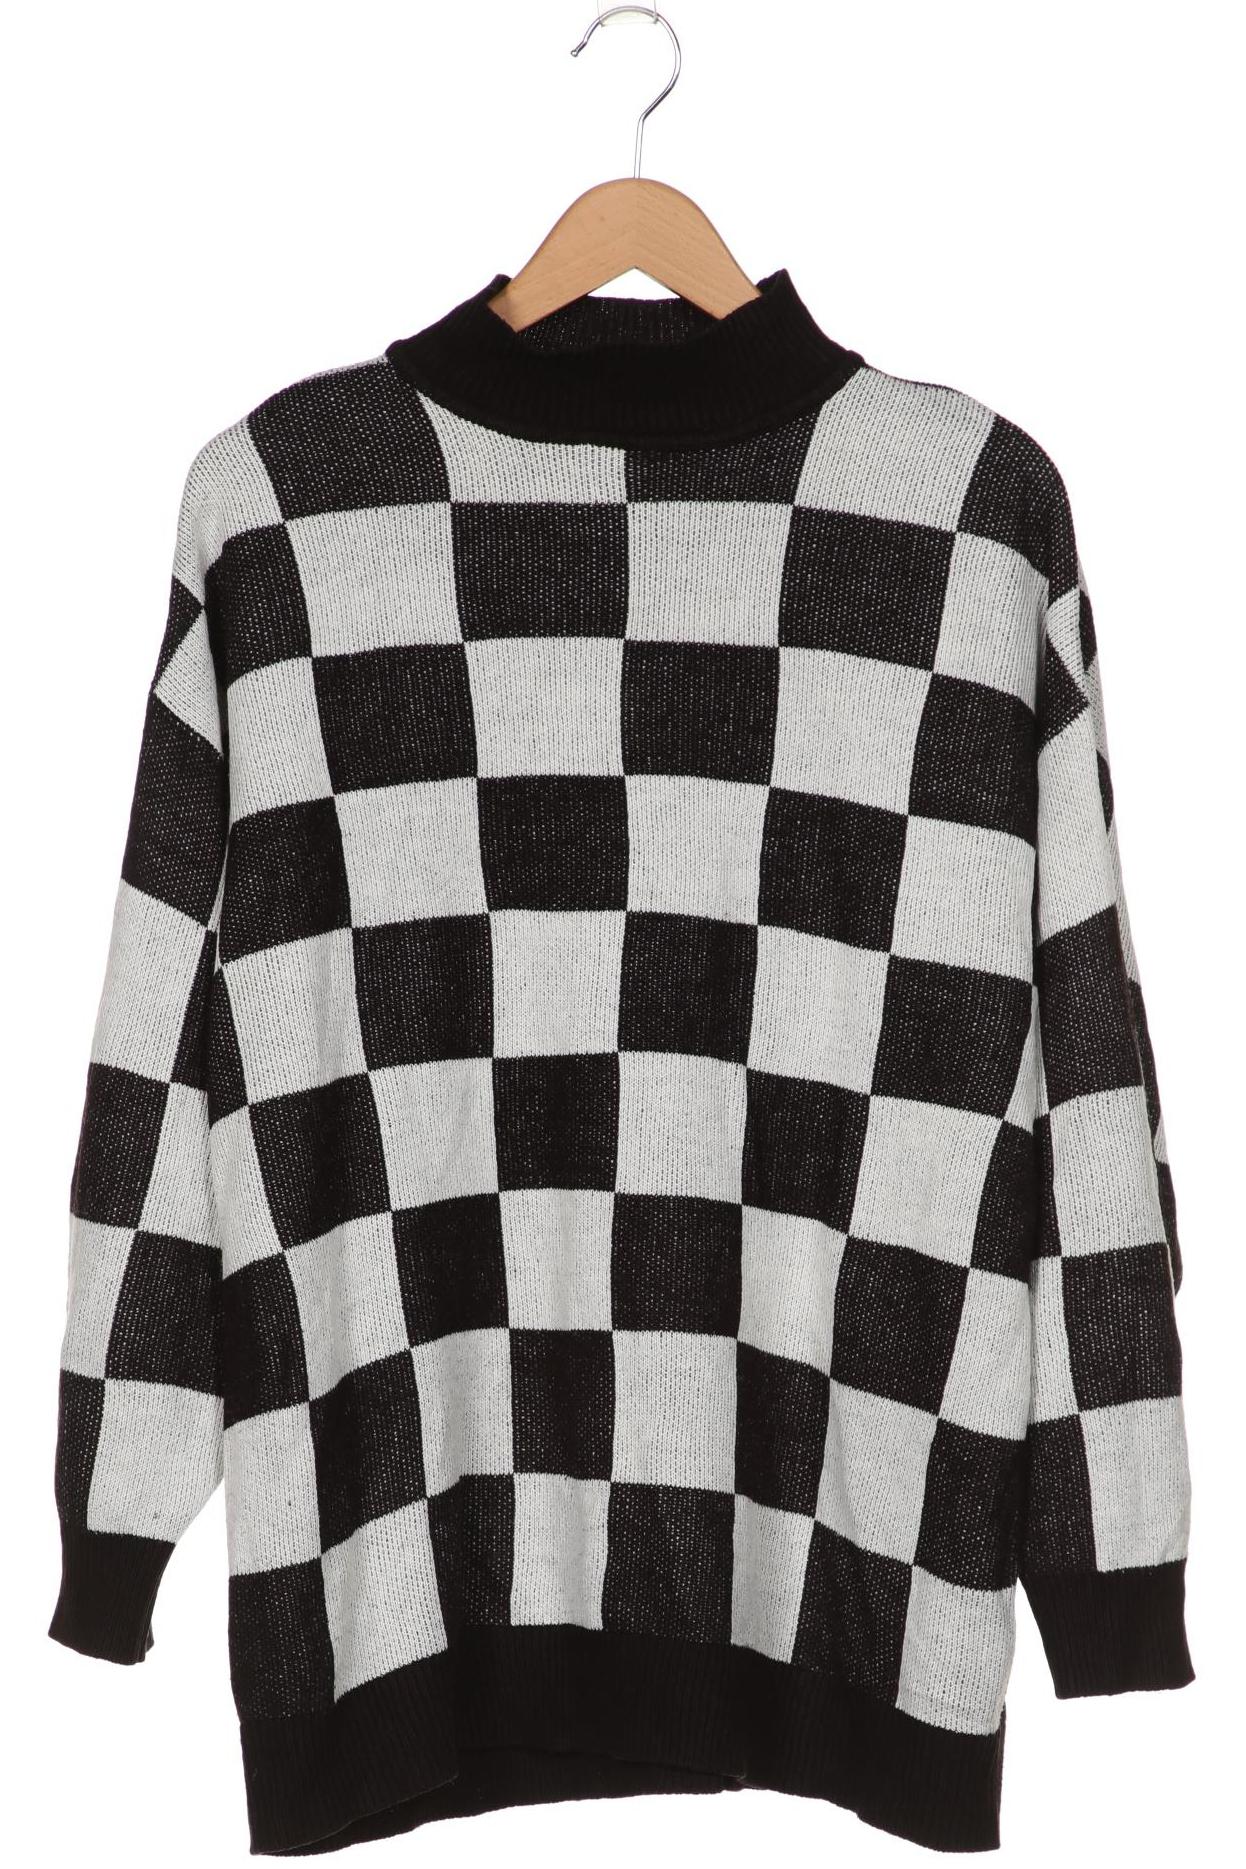 H&M Damen Pullover, schwarz, Gr. 38 von H&M